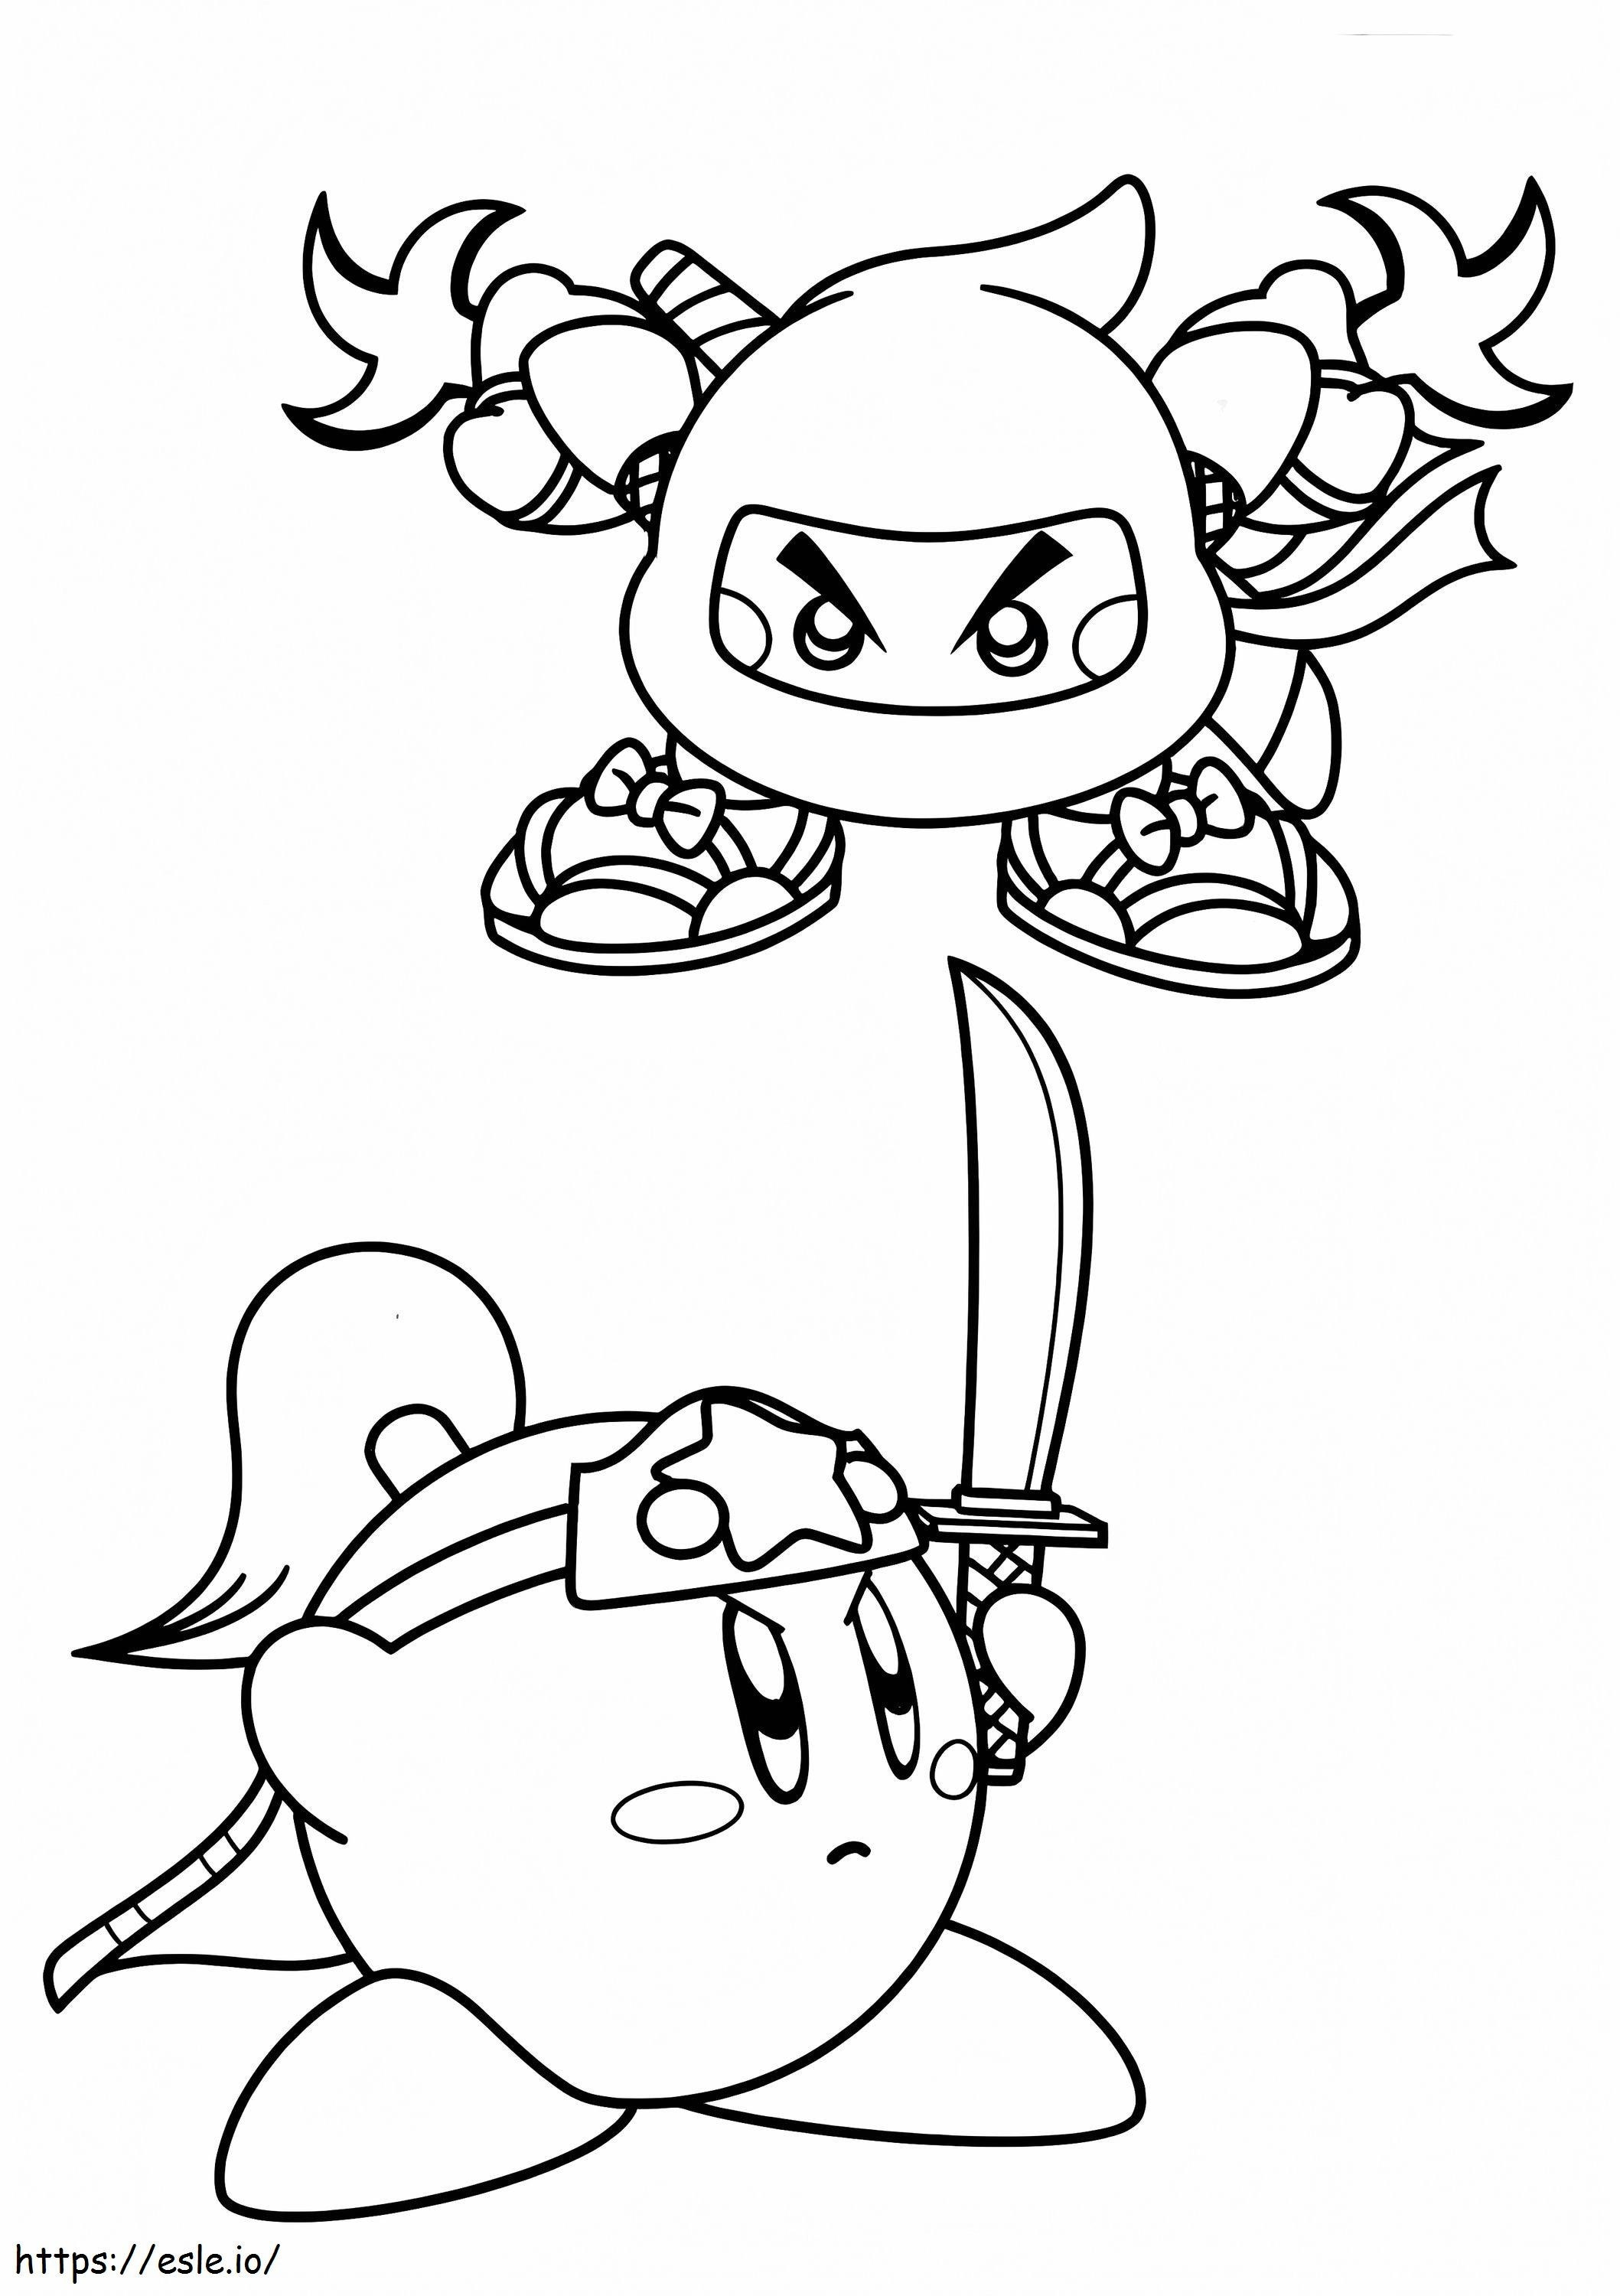 Las dos pieles ninja de Kirby para colorear